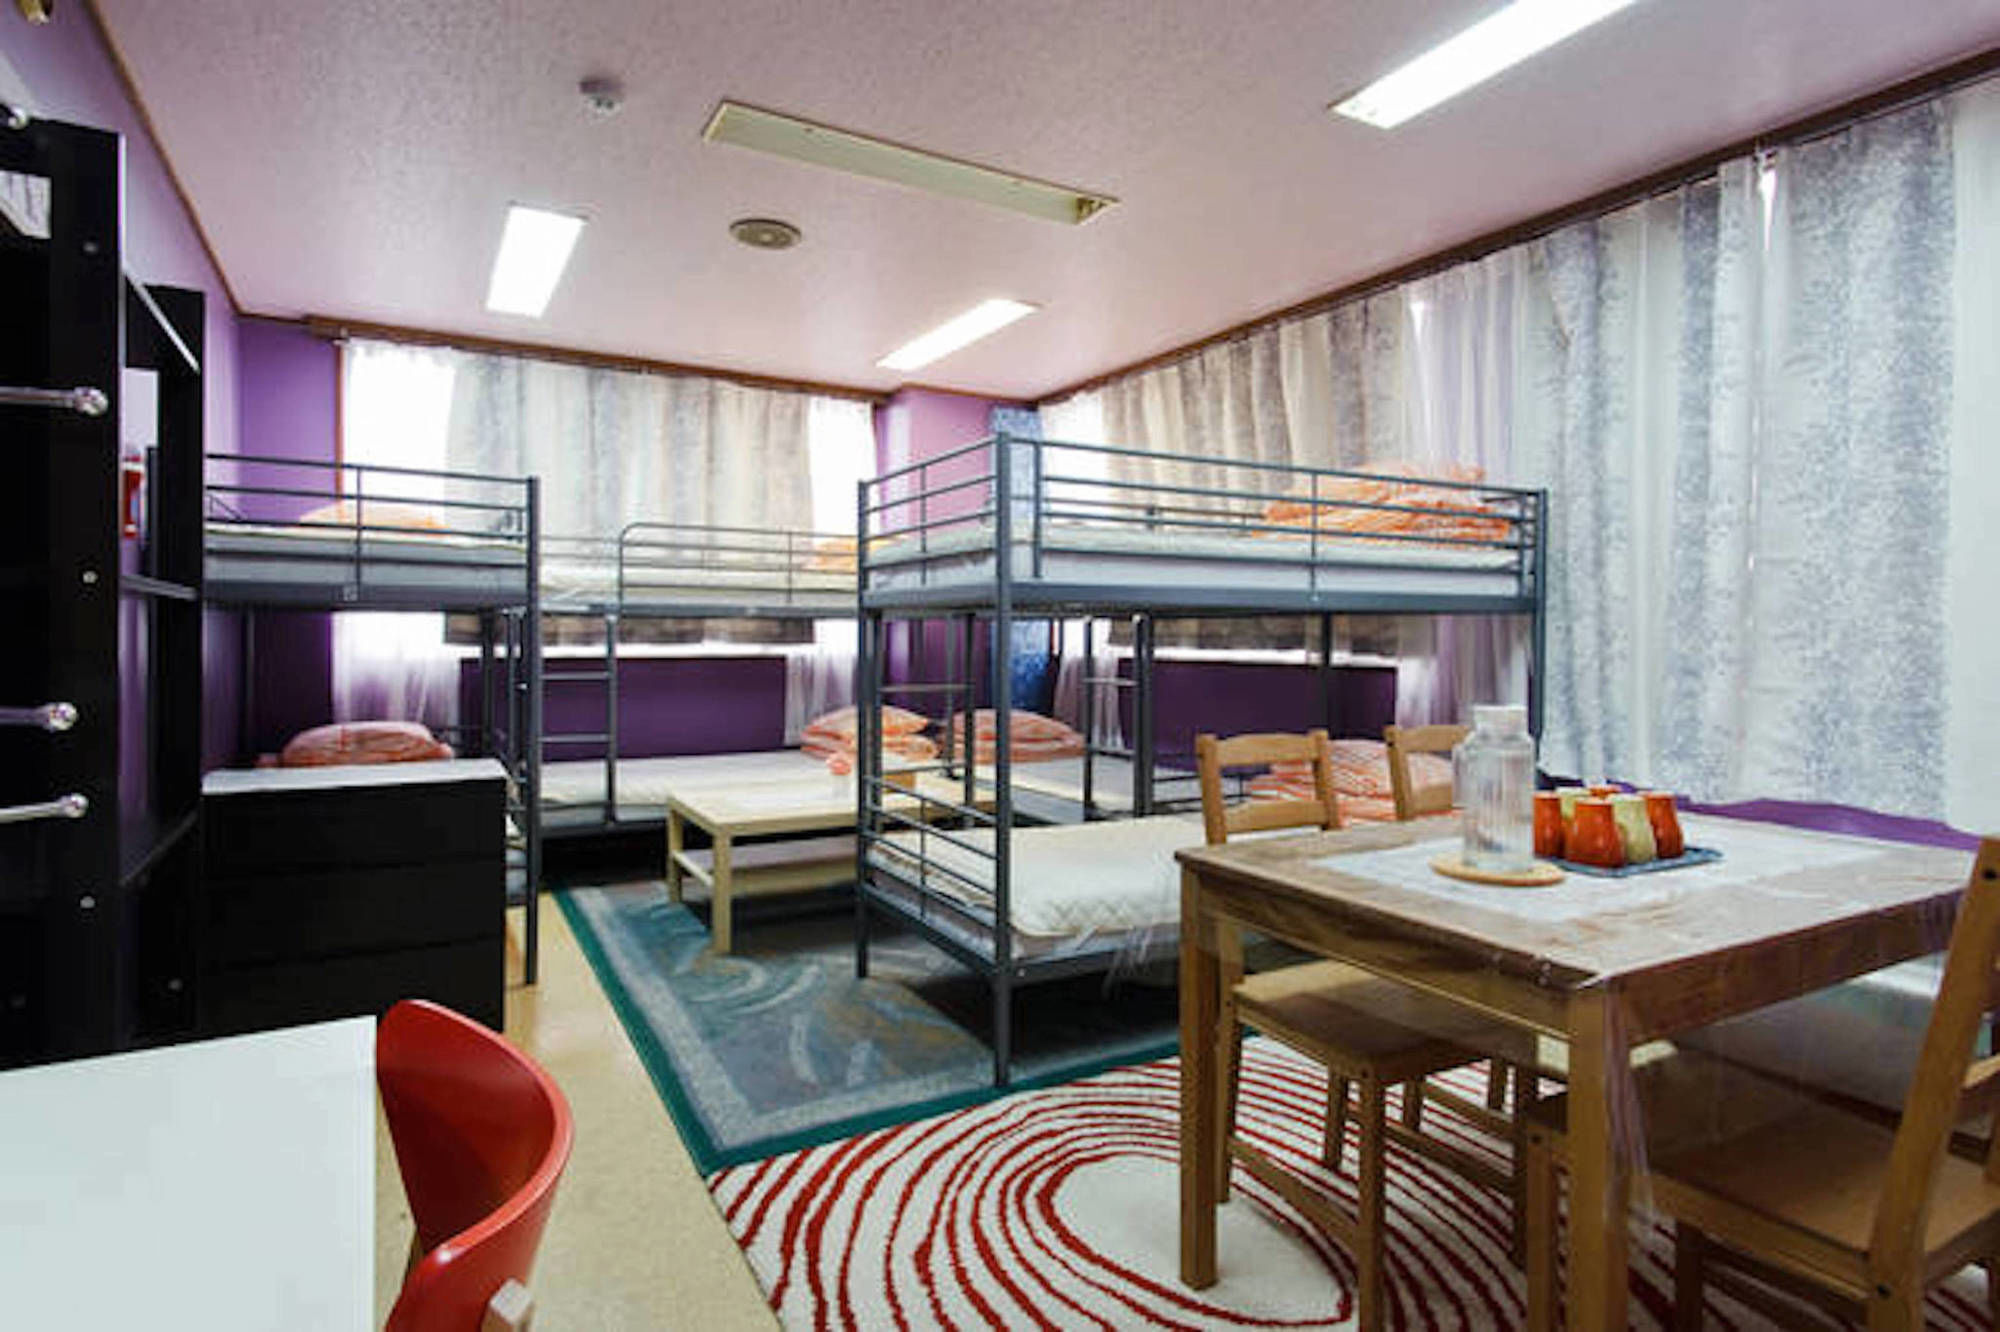 Hotel Osaka Momo House Abeno Zewnętrze zdjęcie